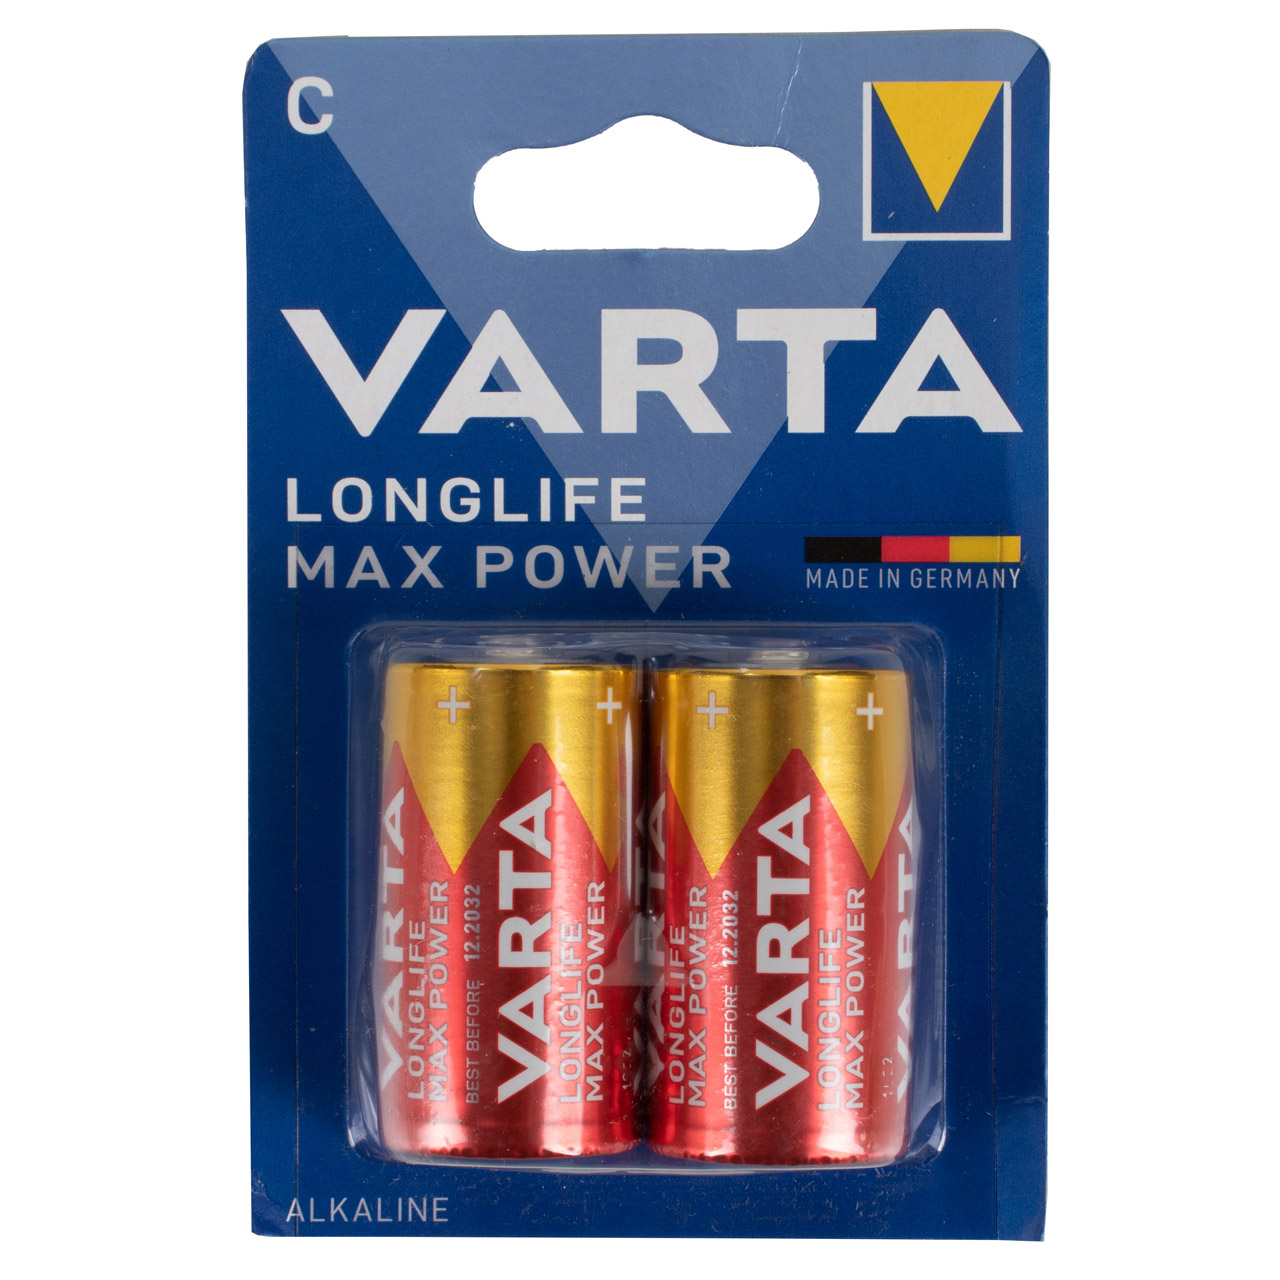 10x VARTA LONGLIFE MAX POWER ALKALINE Batterie C BABY 4714 LR14 MN1400 1,5V